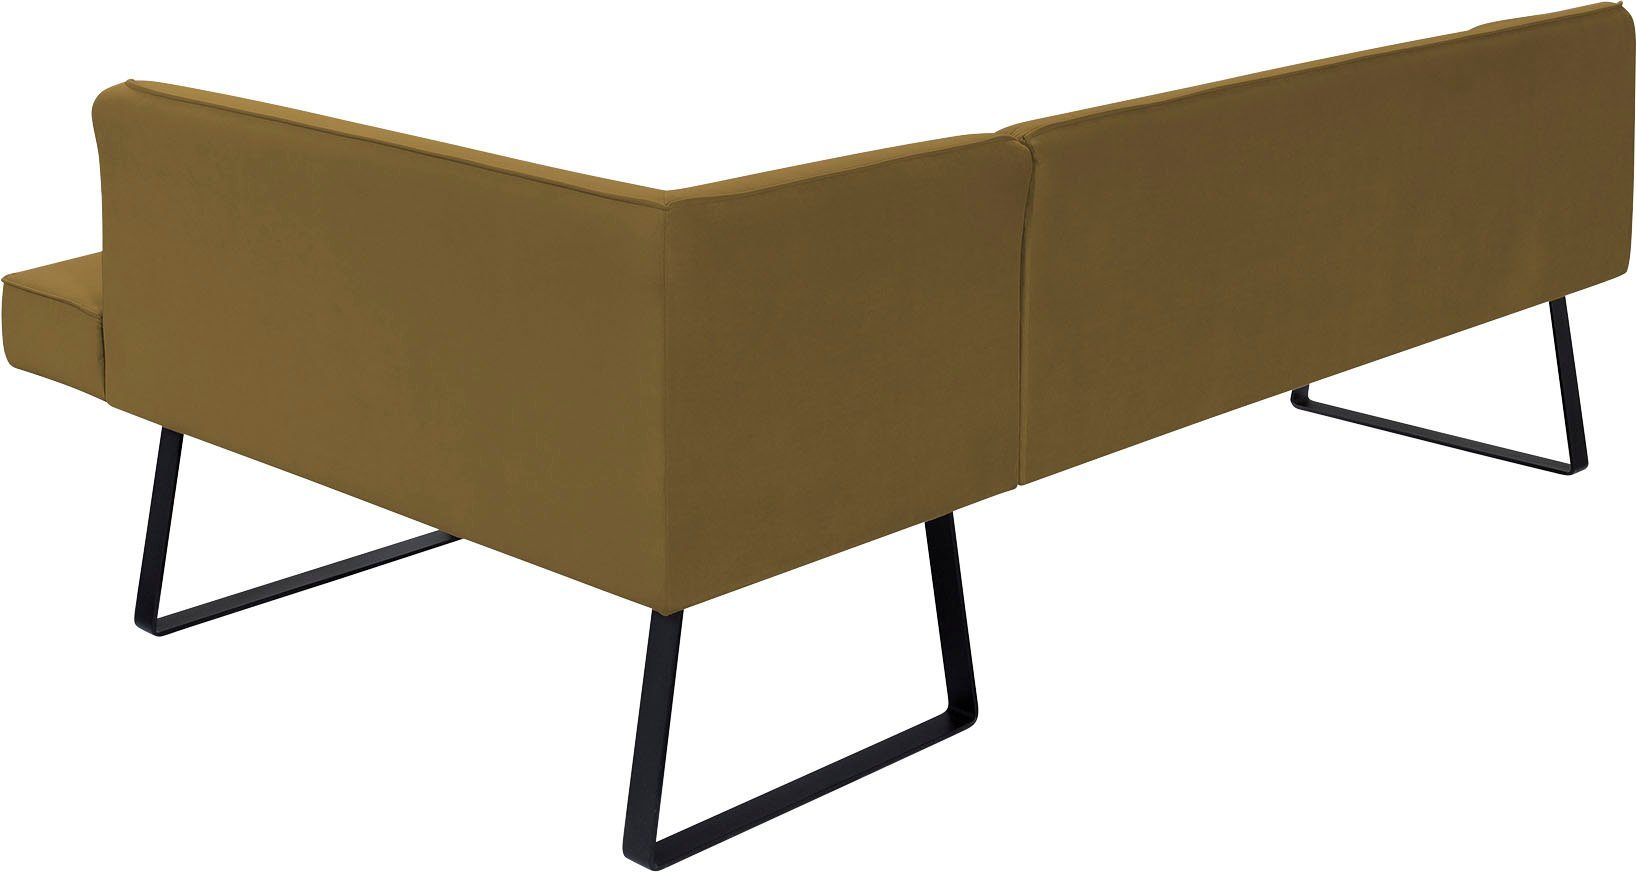 exxpo - sofa fashion Eckbank Keder Metallfüßen, in Americano, verschiedenen Bezug Qualitäten und mit